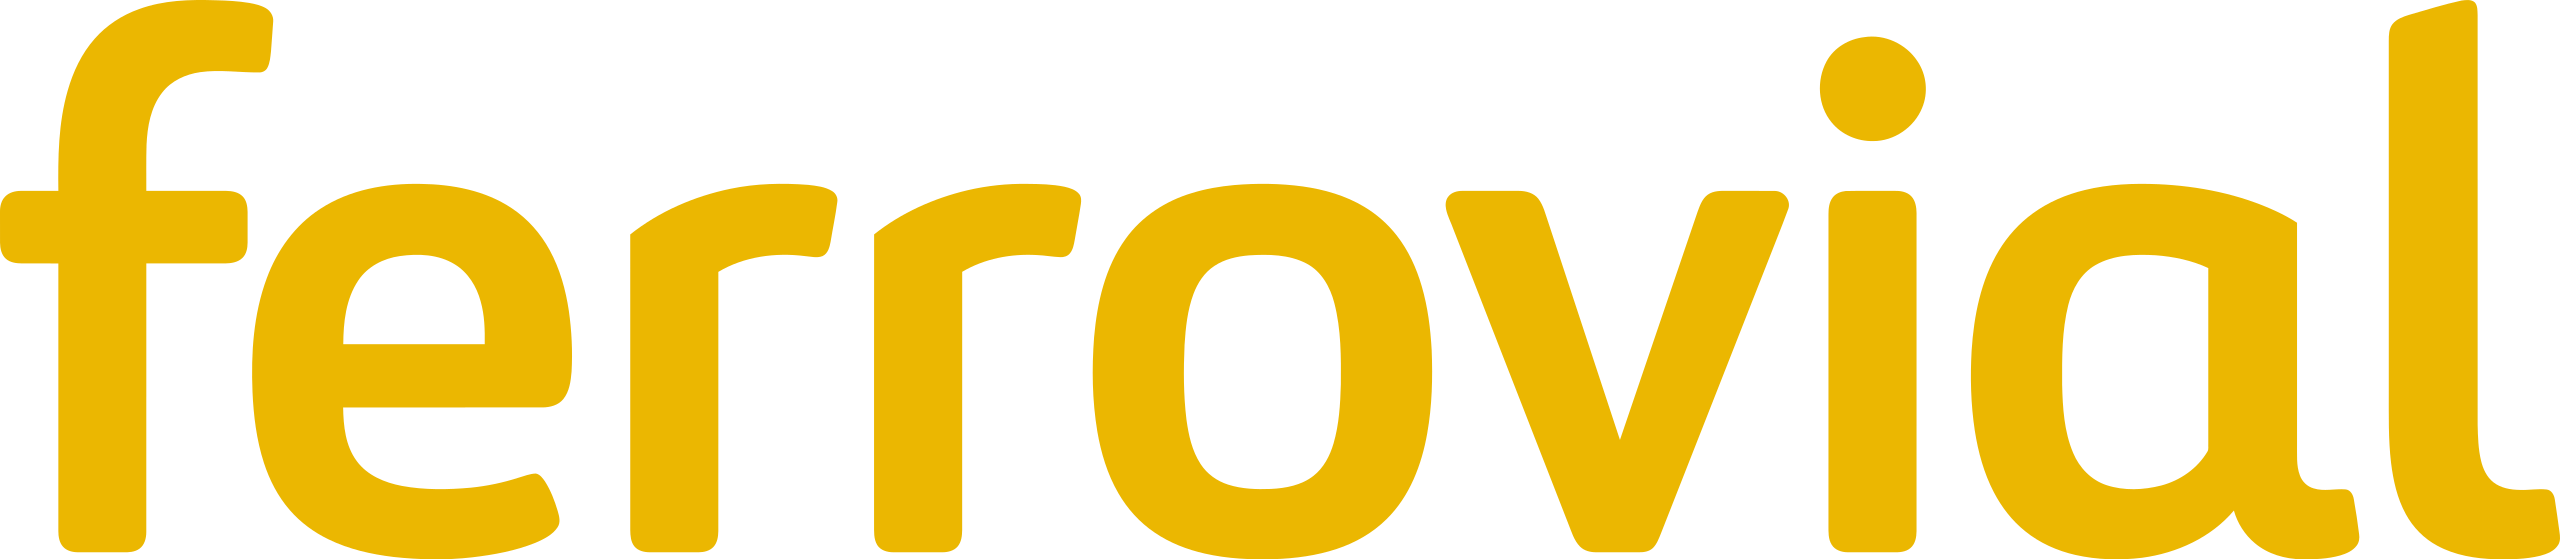 17-Ferrovial_Logo.svg